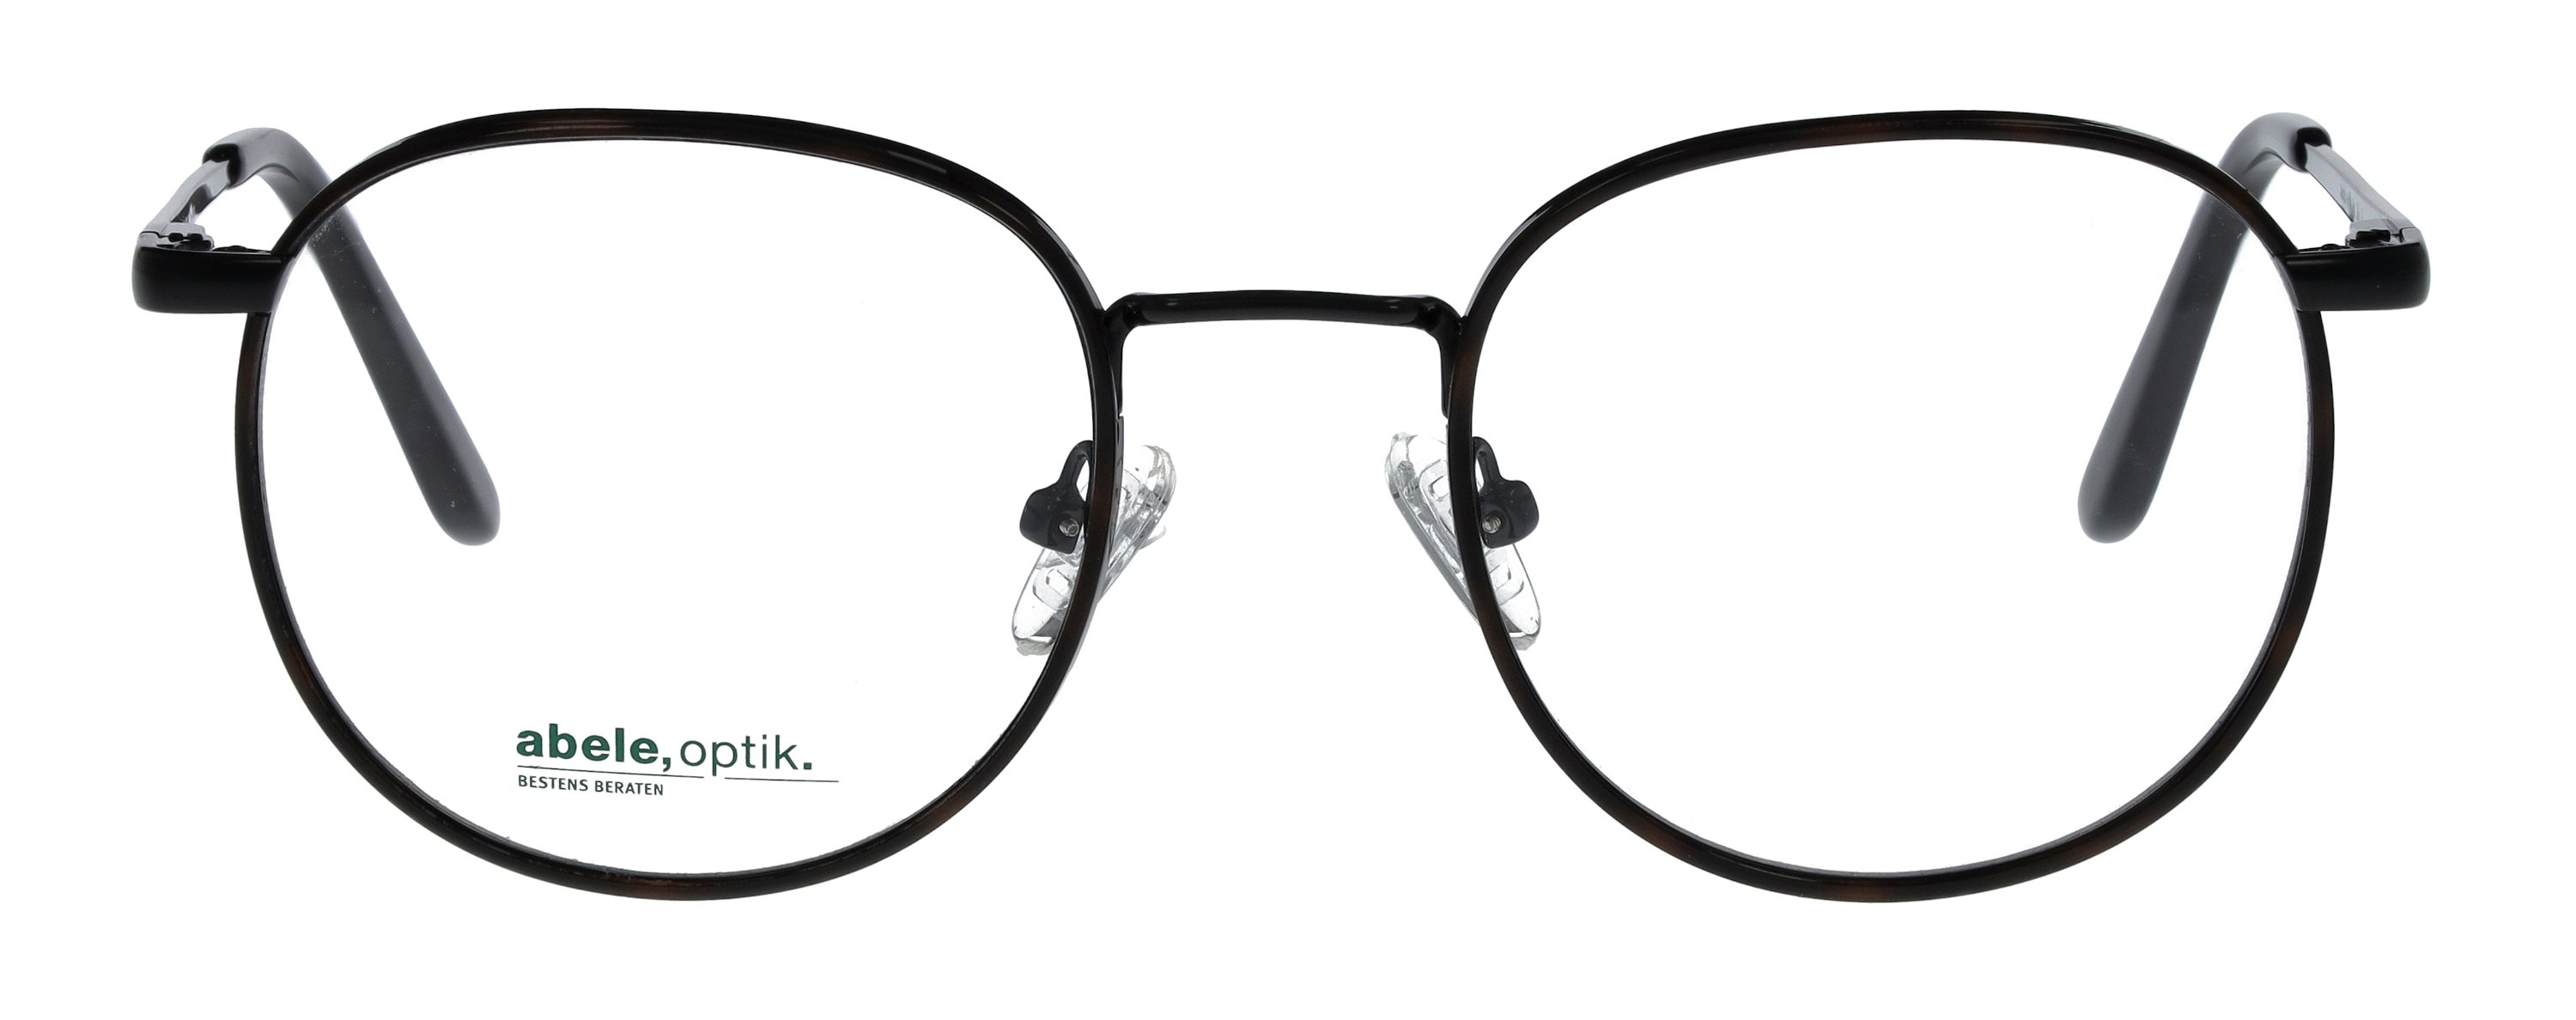 Das Bild zeigt die Korrektionsbrille 148611 von der Marke Abele Optik in schwarz.